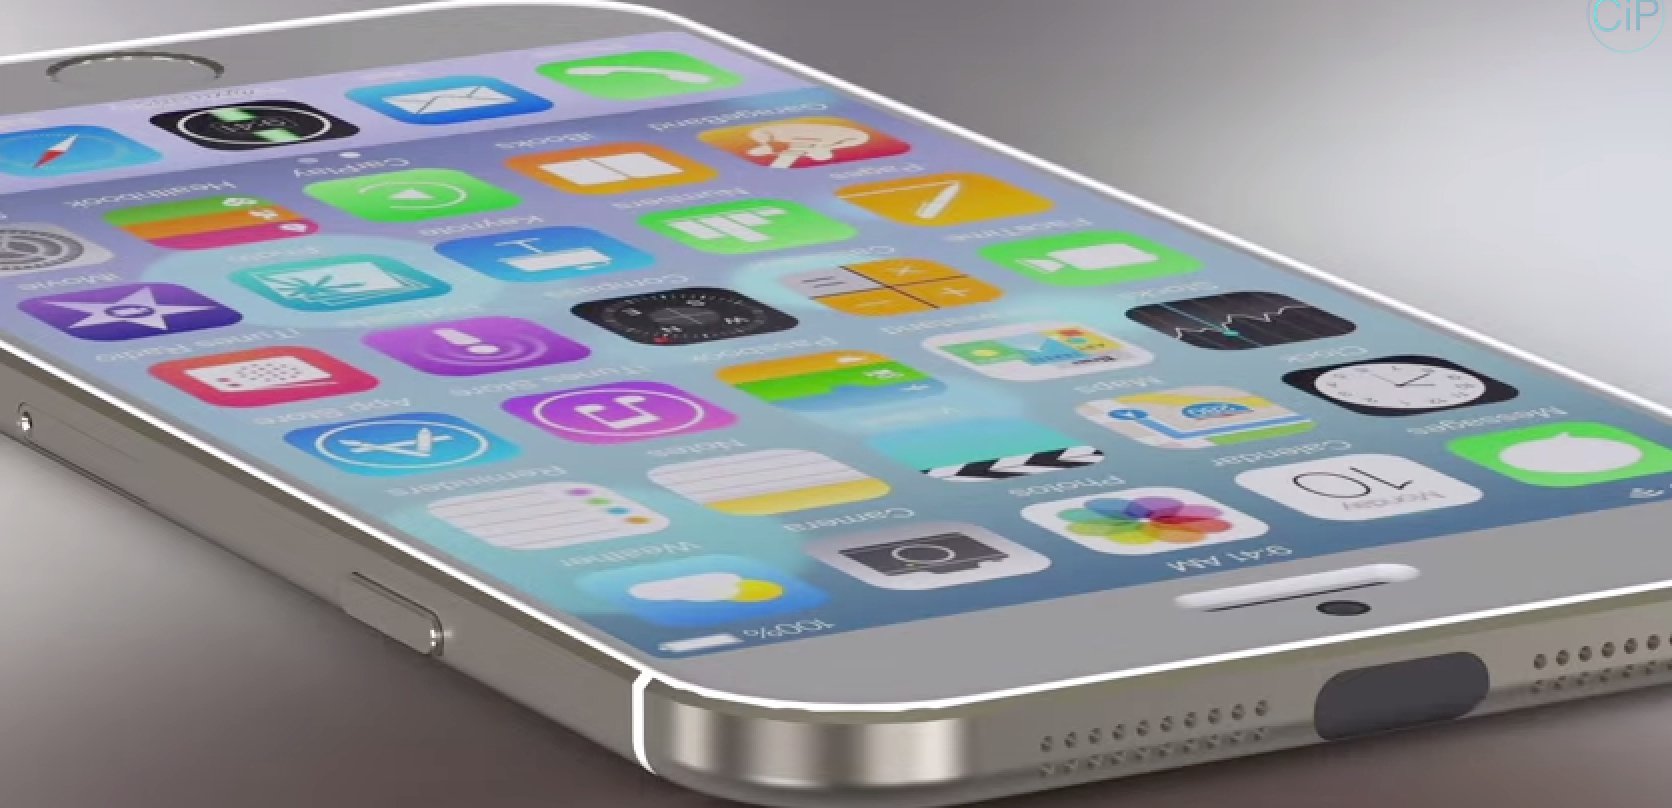 iPhone 6 mit iOS 8 im Vergleich mit Samsung Galaxy S5 (Konzept) 9